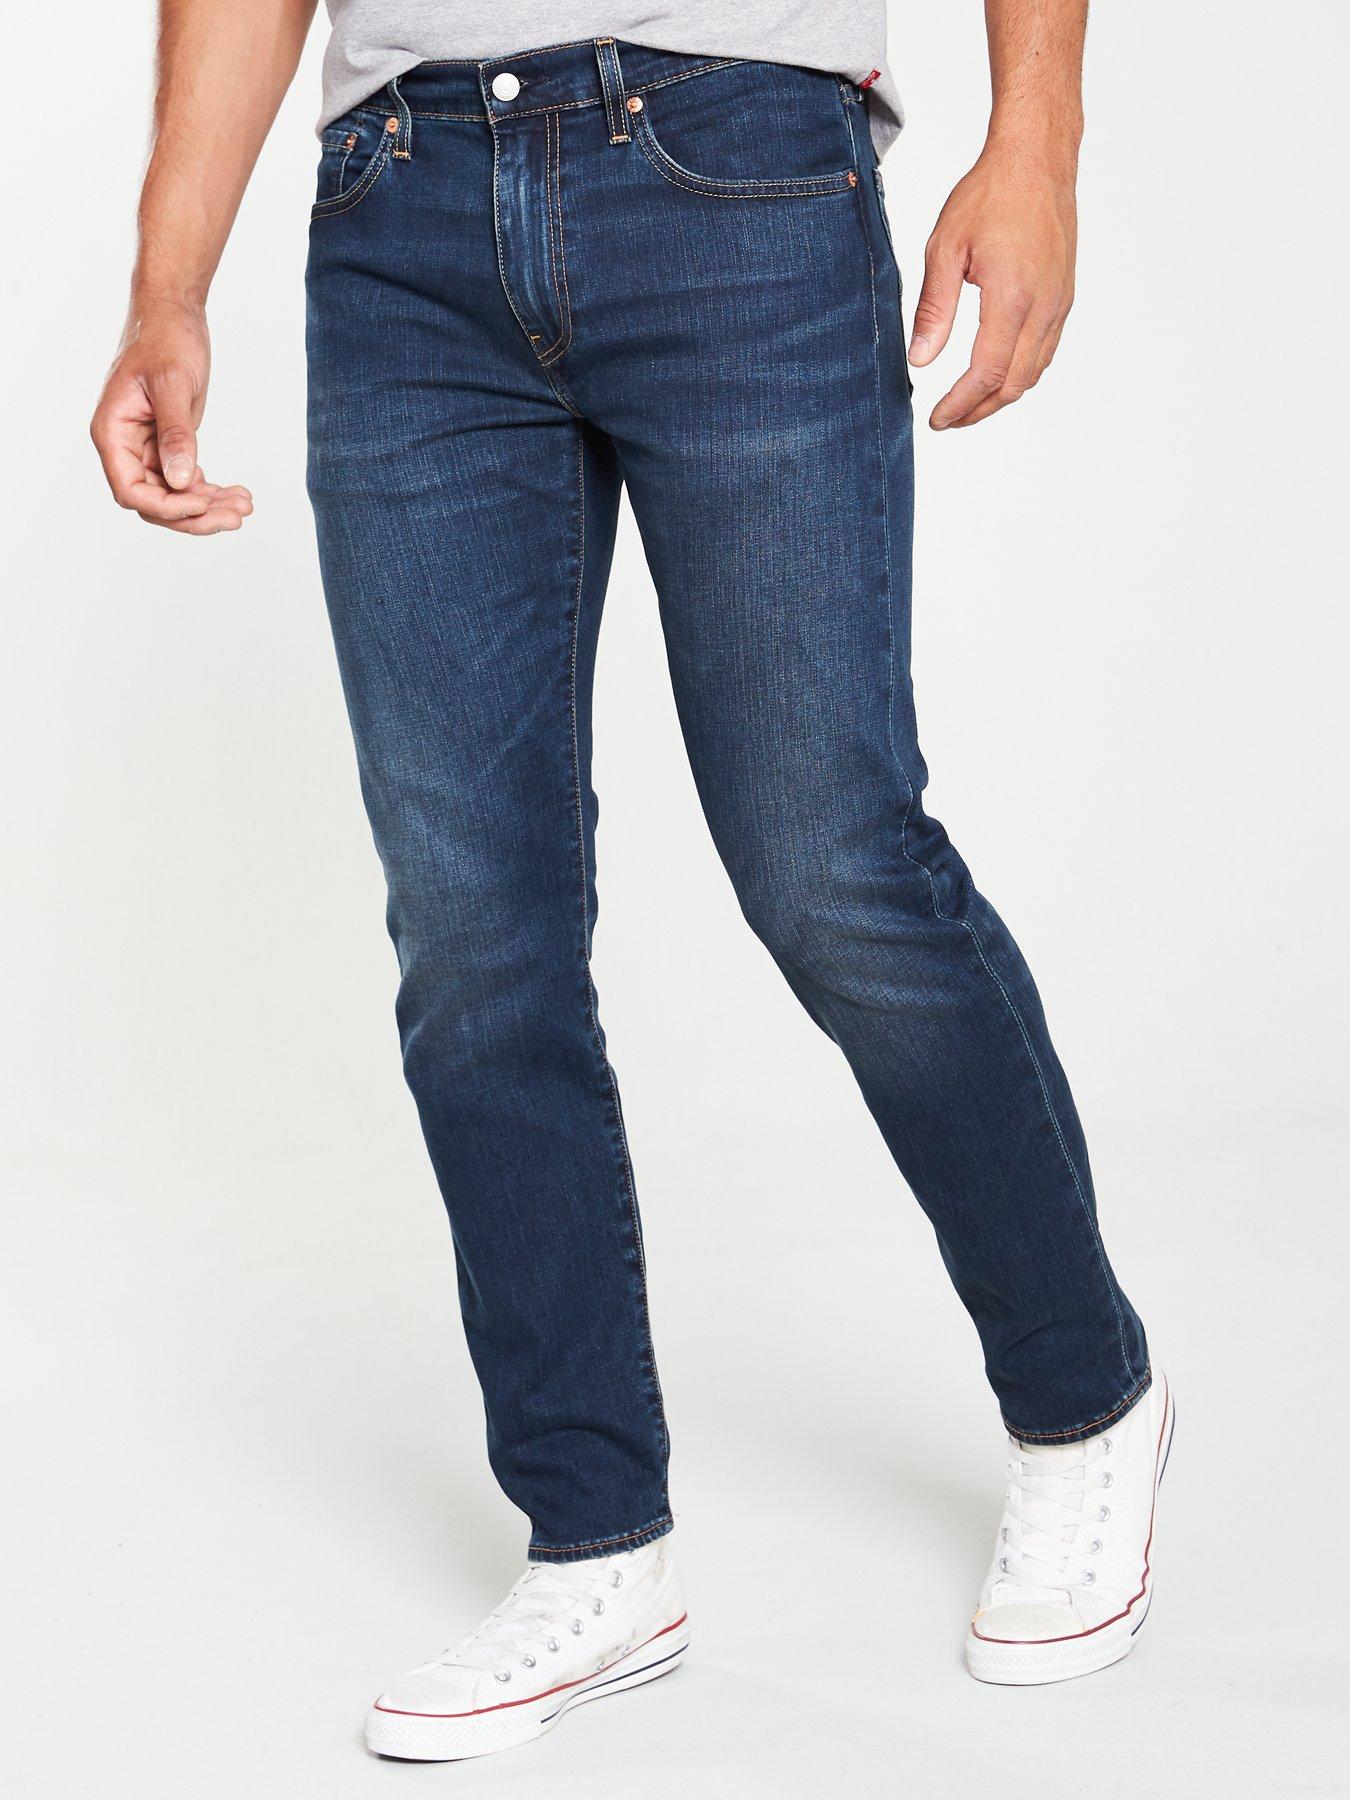 levis 502 jeans uk